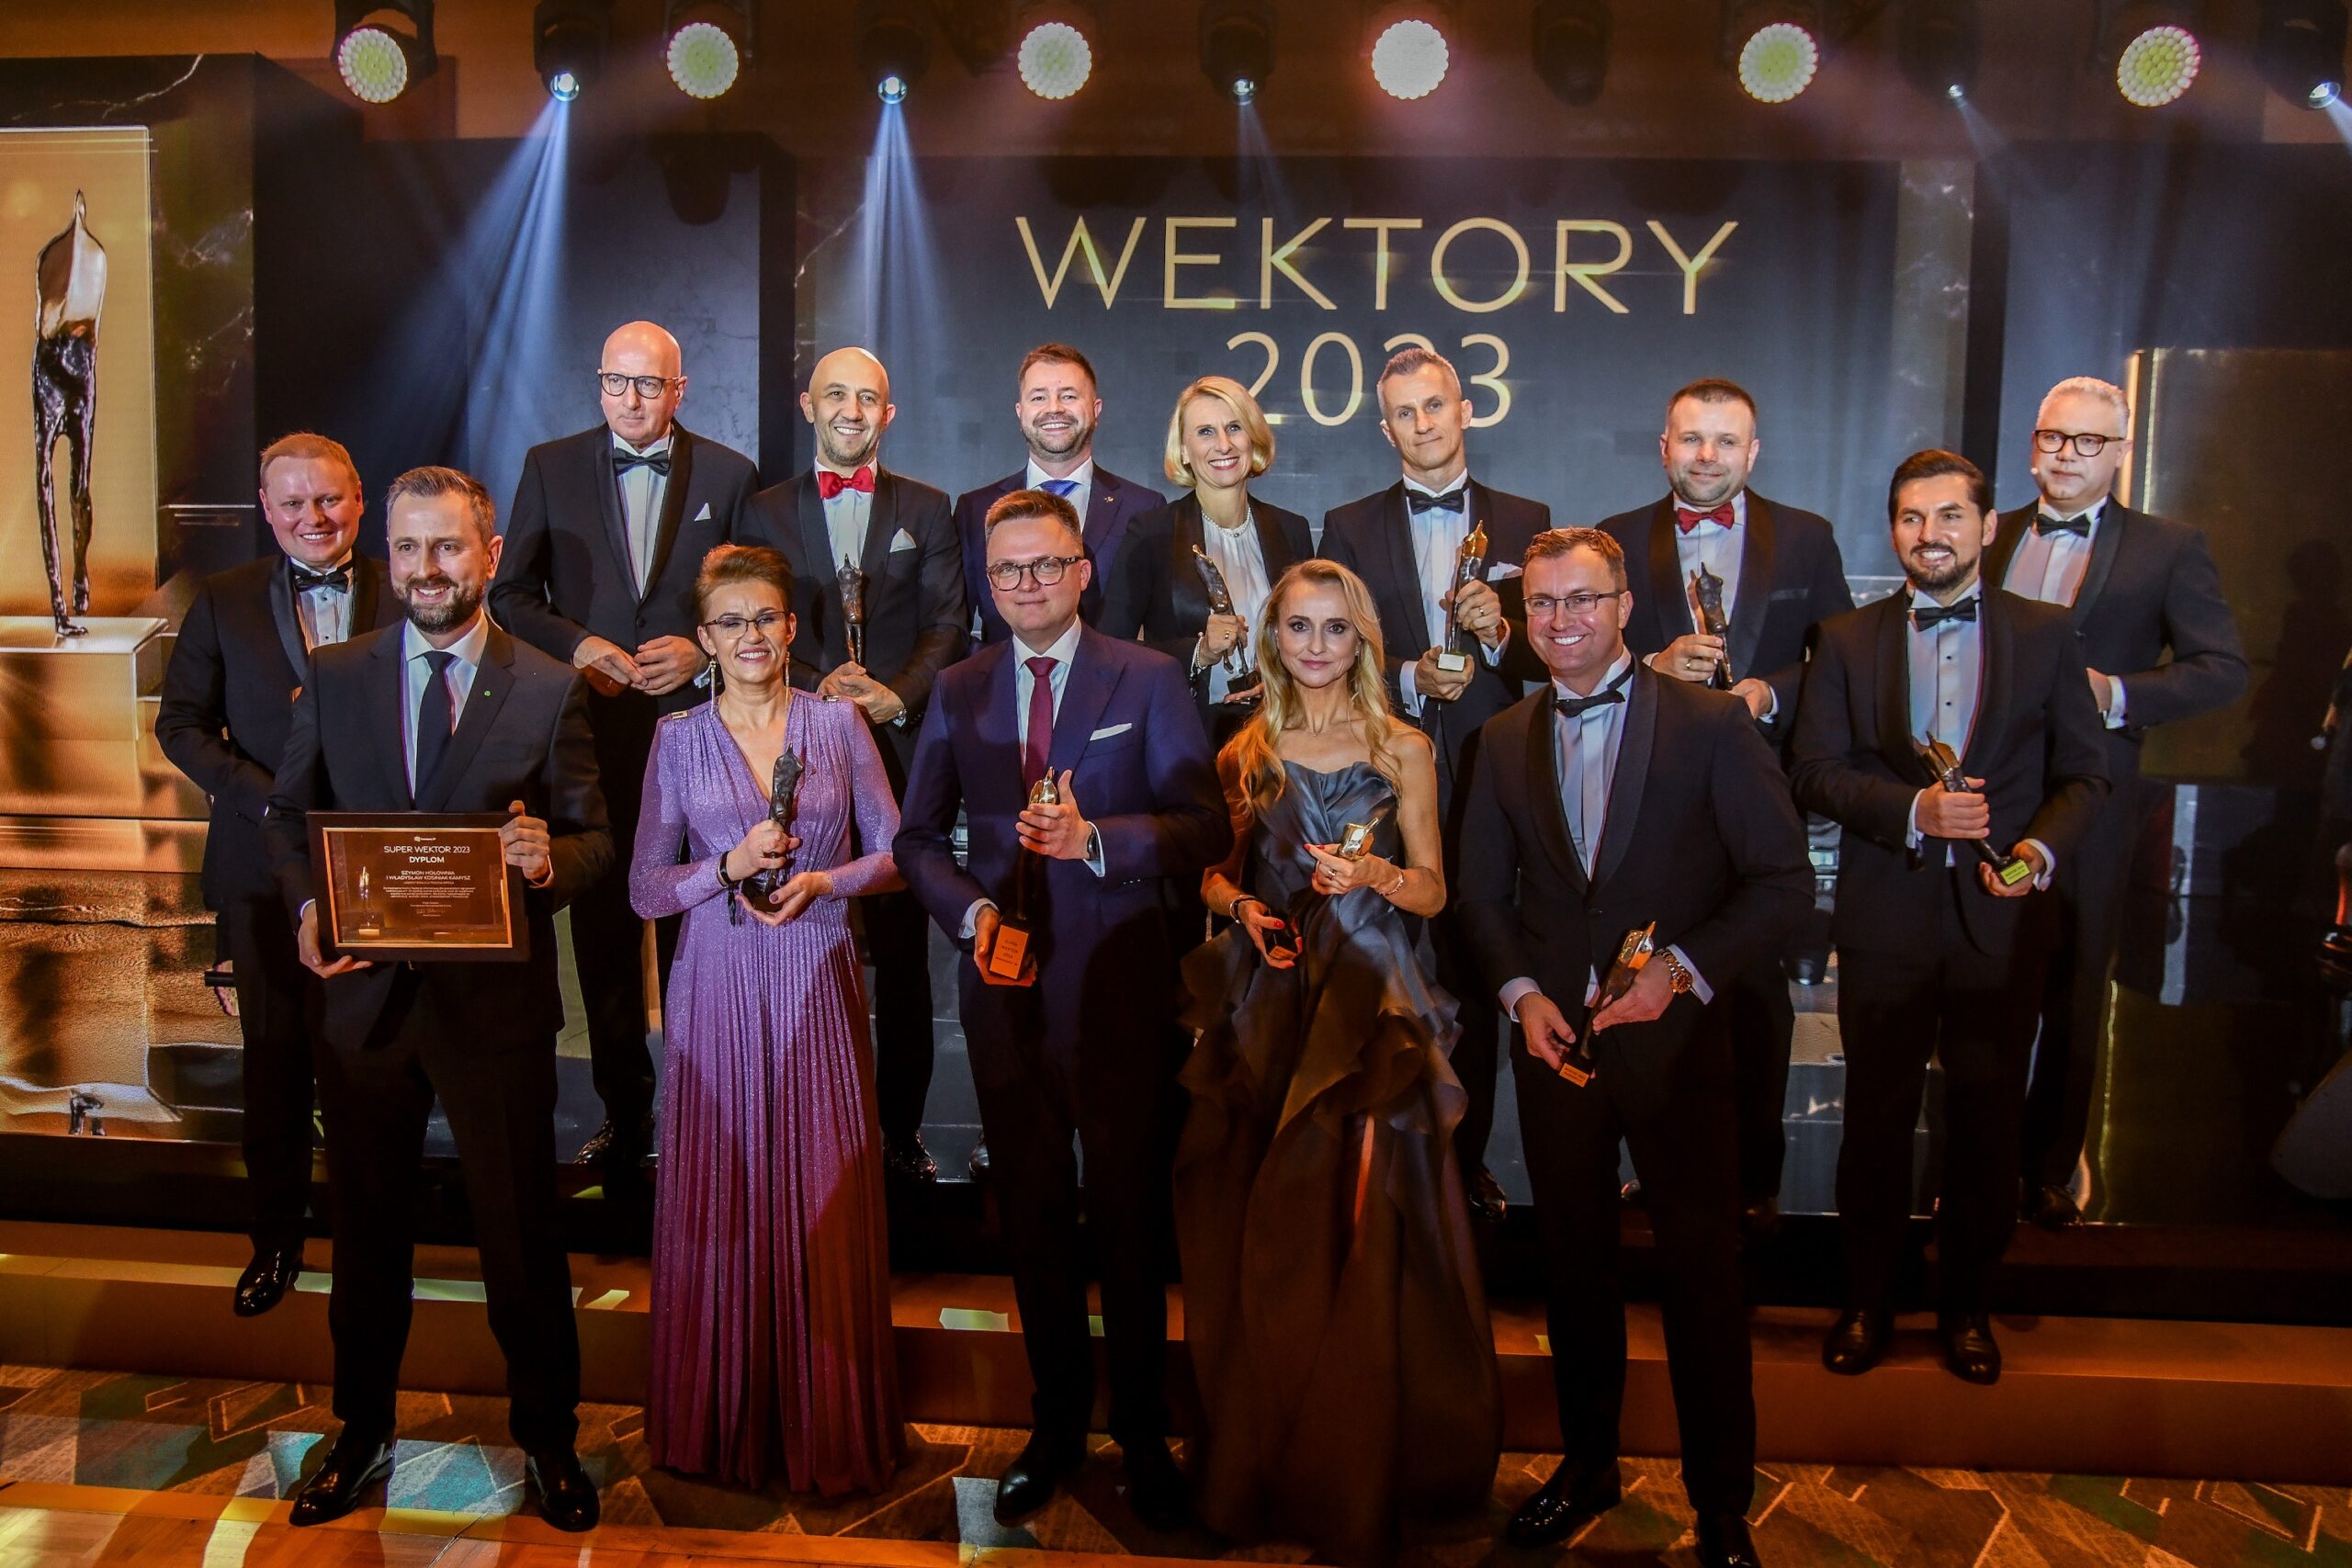 Foto: Ewa Wernerowicz wśród wyróżnionych przedsiębiorców. W tym roku nagrodę Superwektora otrzymali Szymon Hołownia i Władysław Kosiniak-Kamysz.